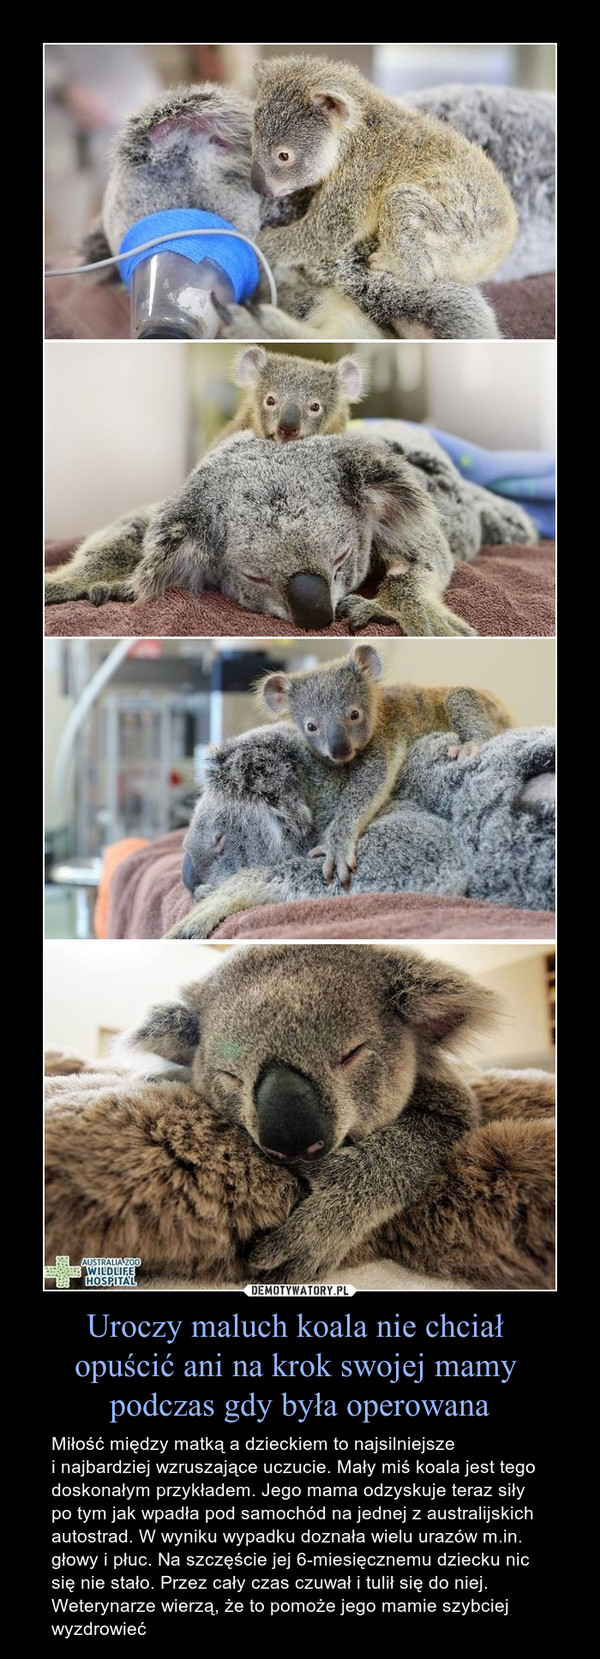 Uroczy maluch koala nie chciał opuścić ani na krok swojej mamy podczas gdy była operowana – Miłość między matką a dzieckiem to najsilniejszei najbardziej wzruszające uczucie. Mały miś koala jest tego doskonałym przykładem. Jego mama odzyskuje teraz siły po tym jak wpadła pod samochód na jednej z australijskich autostrad. W wyniku wypadku doznała wielu urazów m.in. głowy i płuc. Na szczęście jej 6-miesięcznemu dziecku nic się nie stało. Przez cały czas czuwał i tulił się do niej. Weterynarze wierzą, że to pomoże jego mamie szybciej wyzdrowieć 